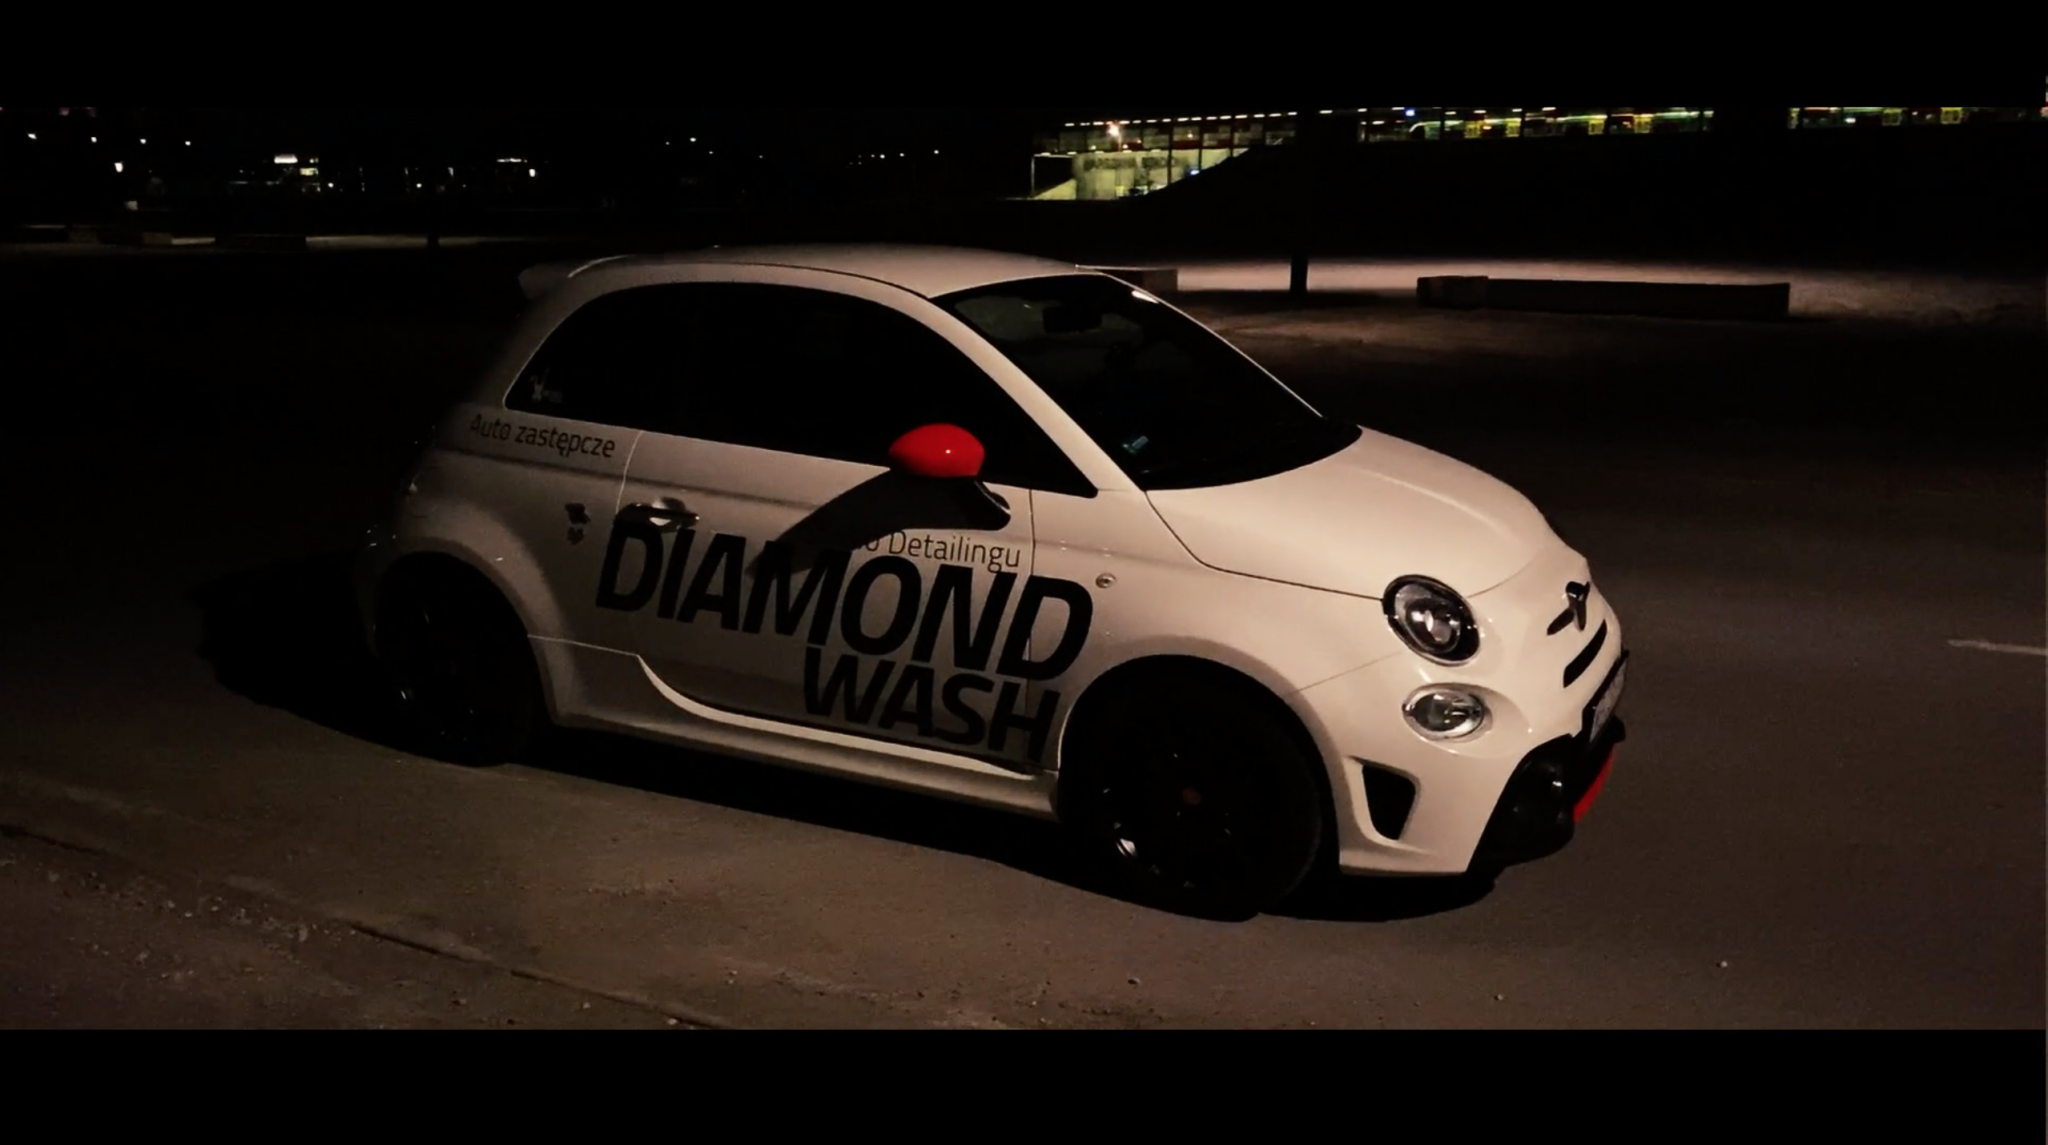 » Samochód Zastępczy Diamond Wash Auto Detailing